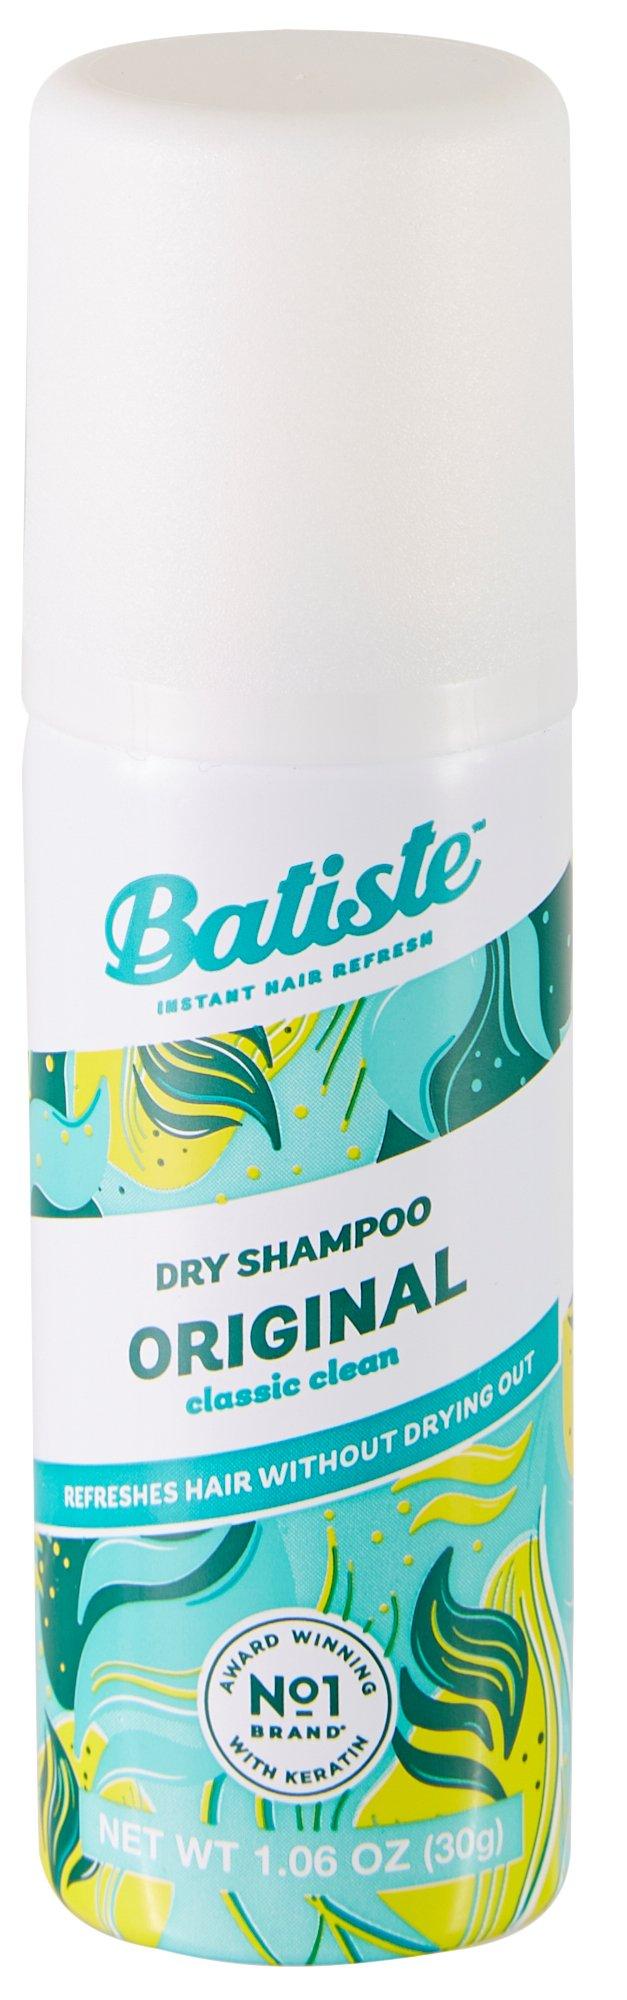 Original Travel Size Dry Shampoo 1.06 oz.